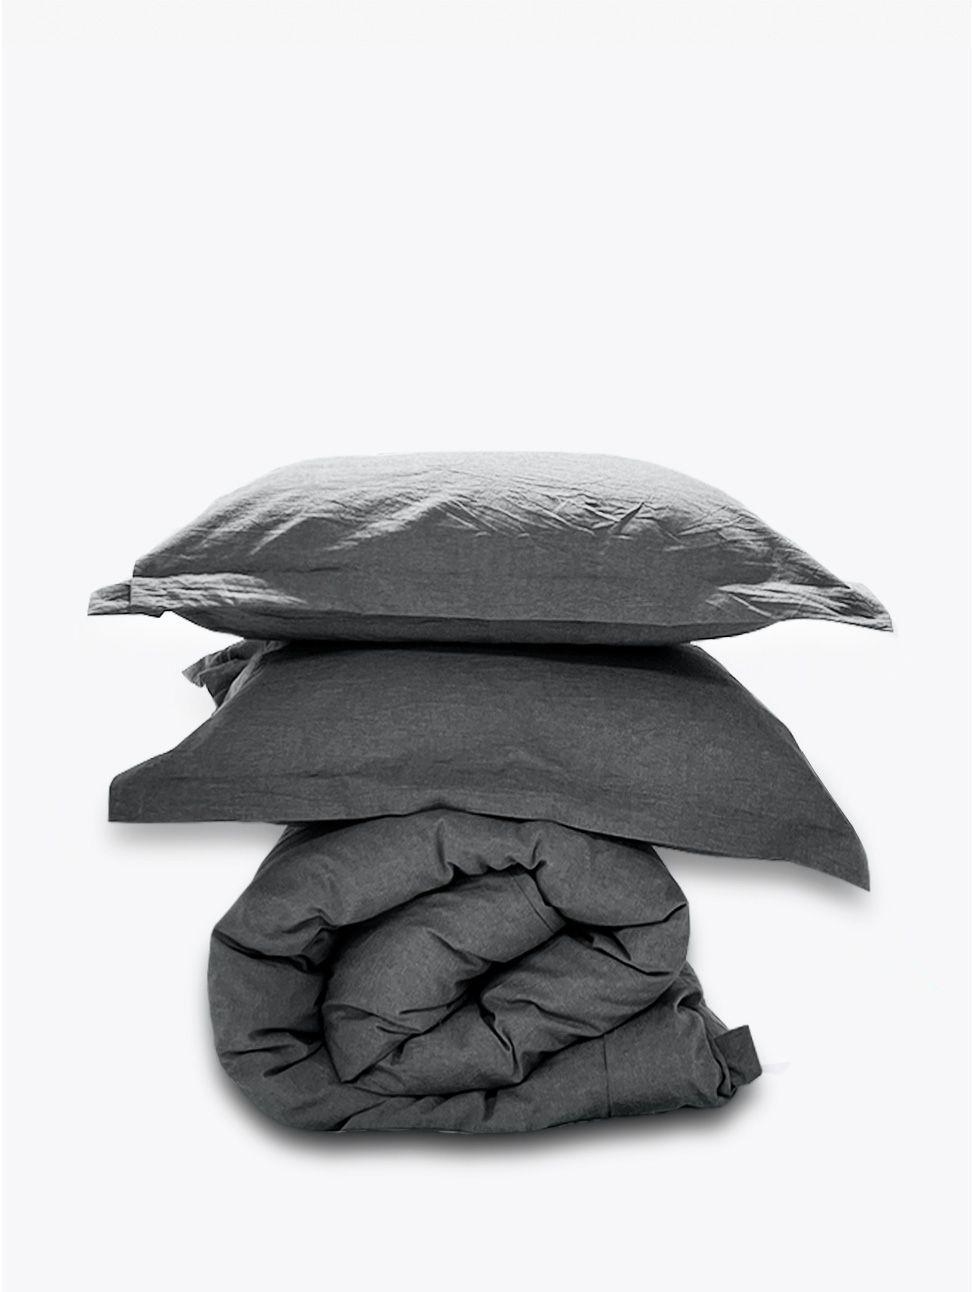 Комплект постельного белья Евро комплект Loft Grey melange